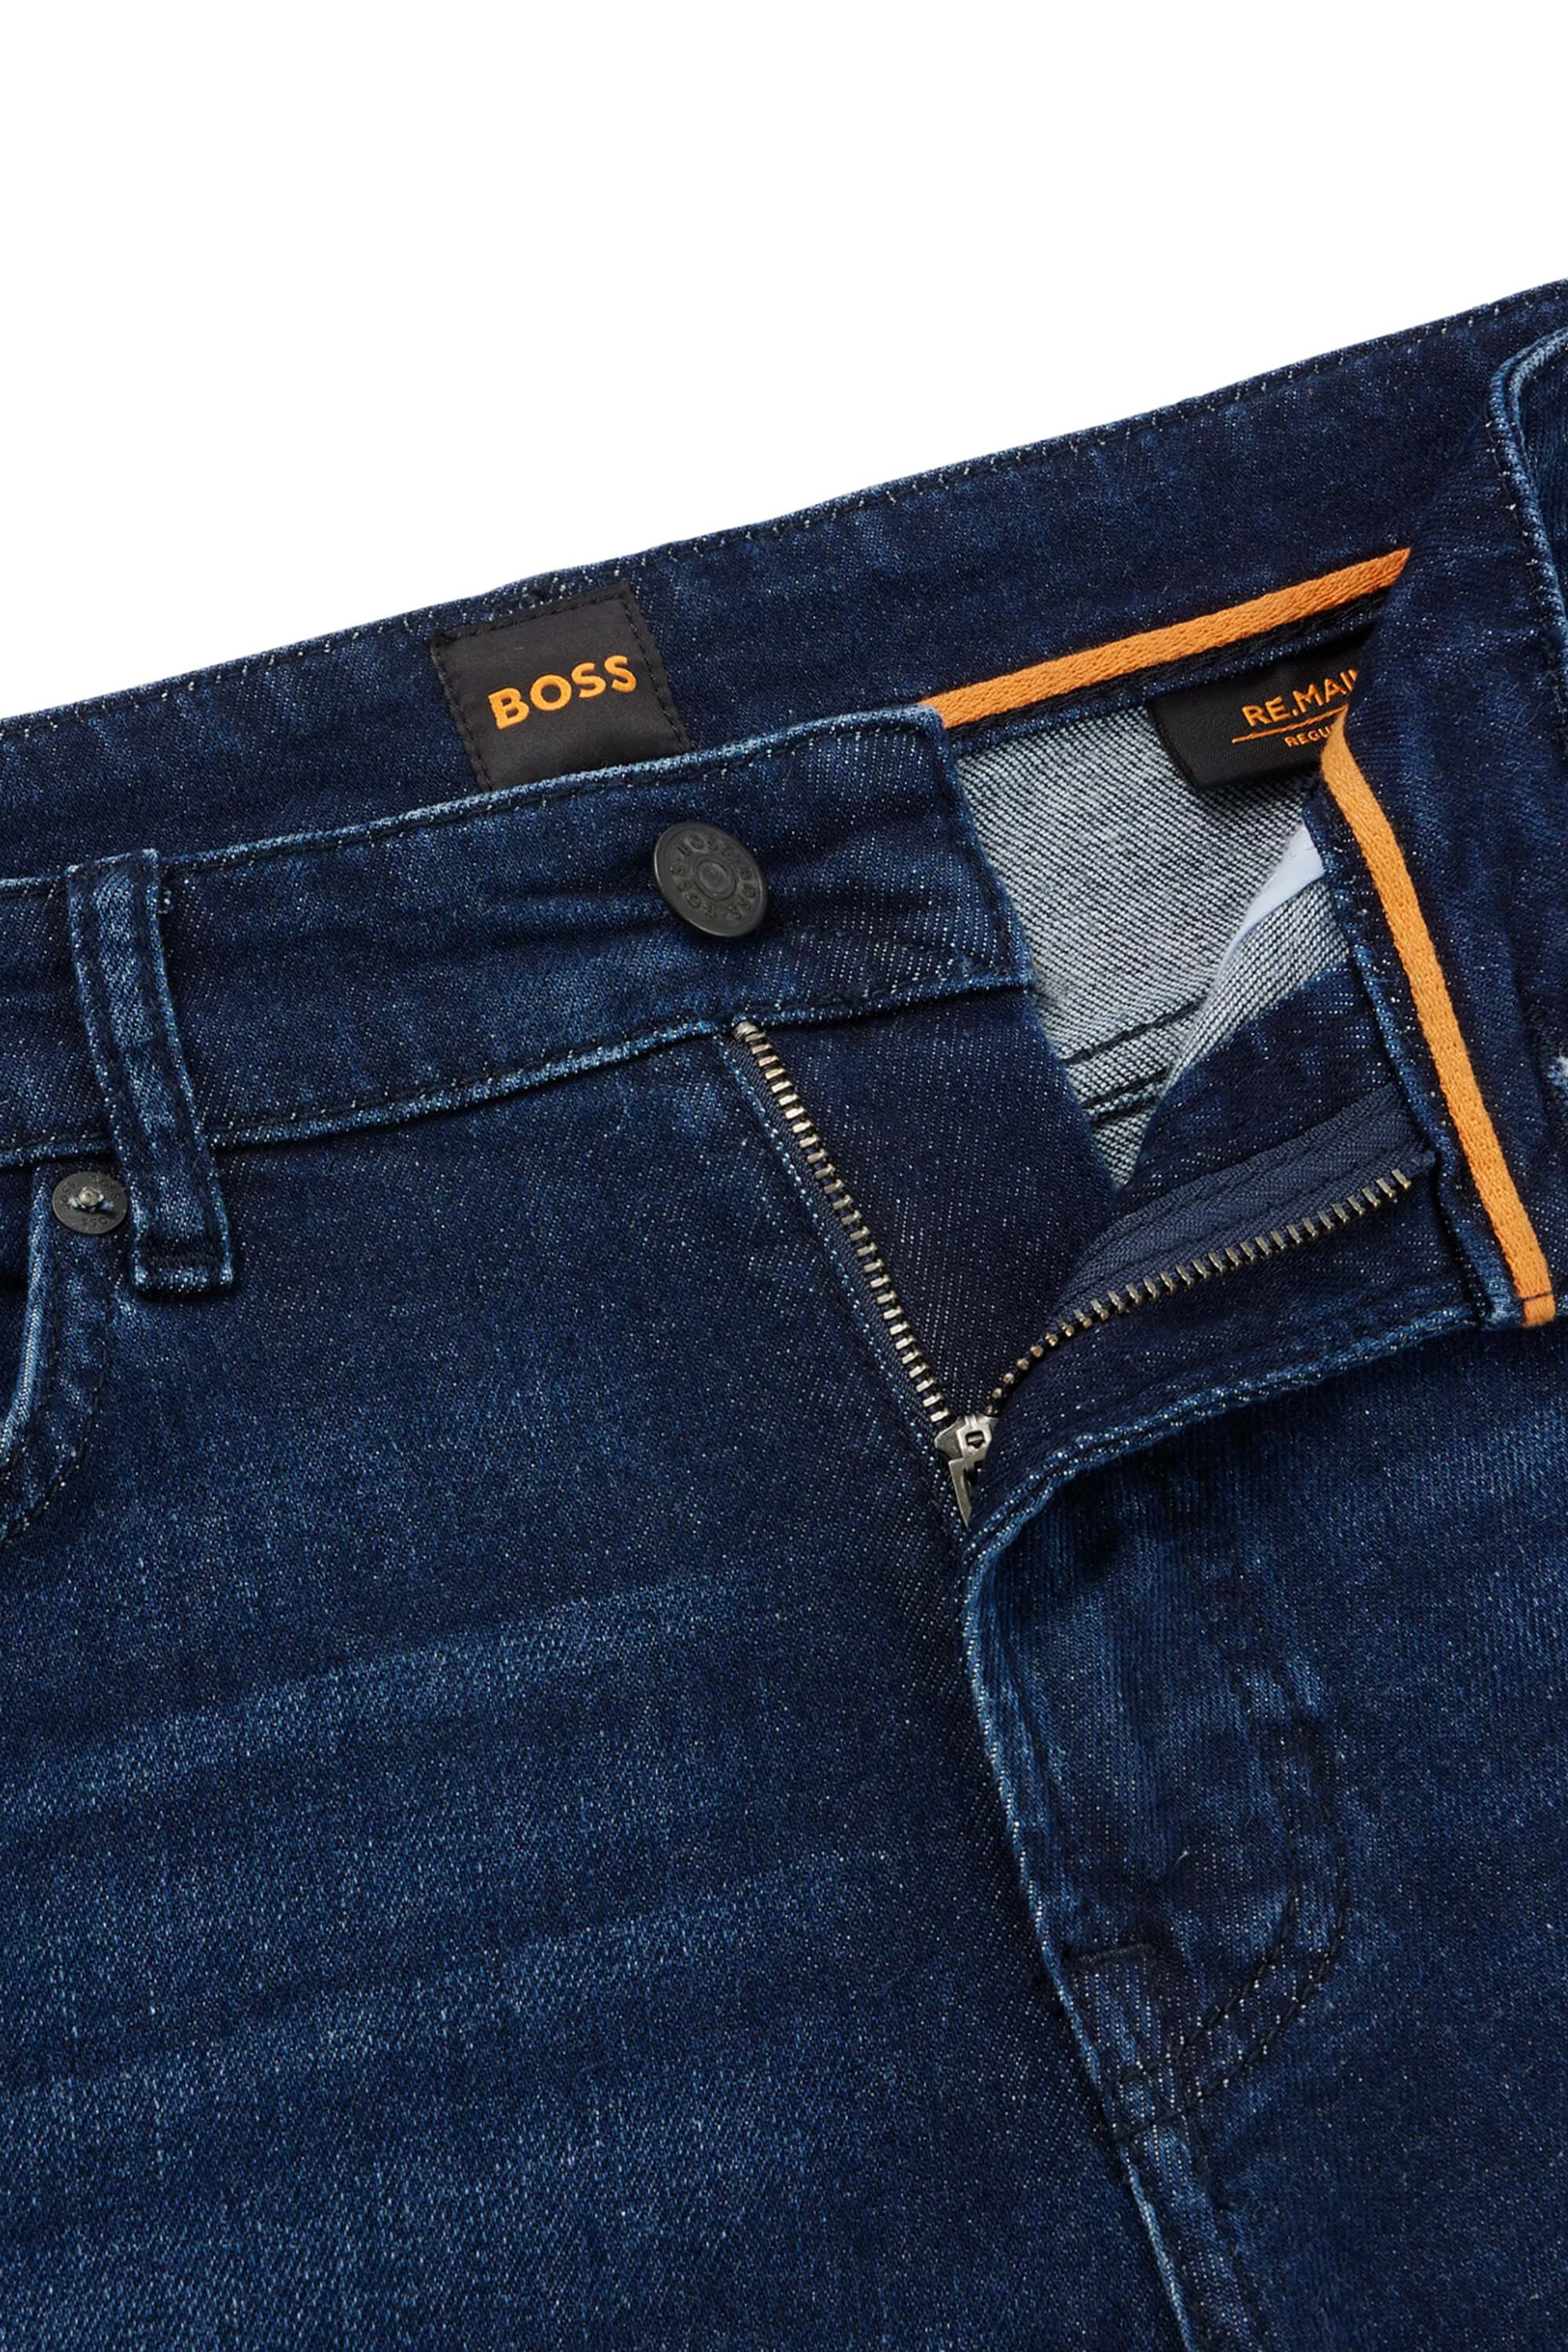 Hugo Boss Re.Maine Horizon Jeans